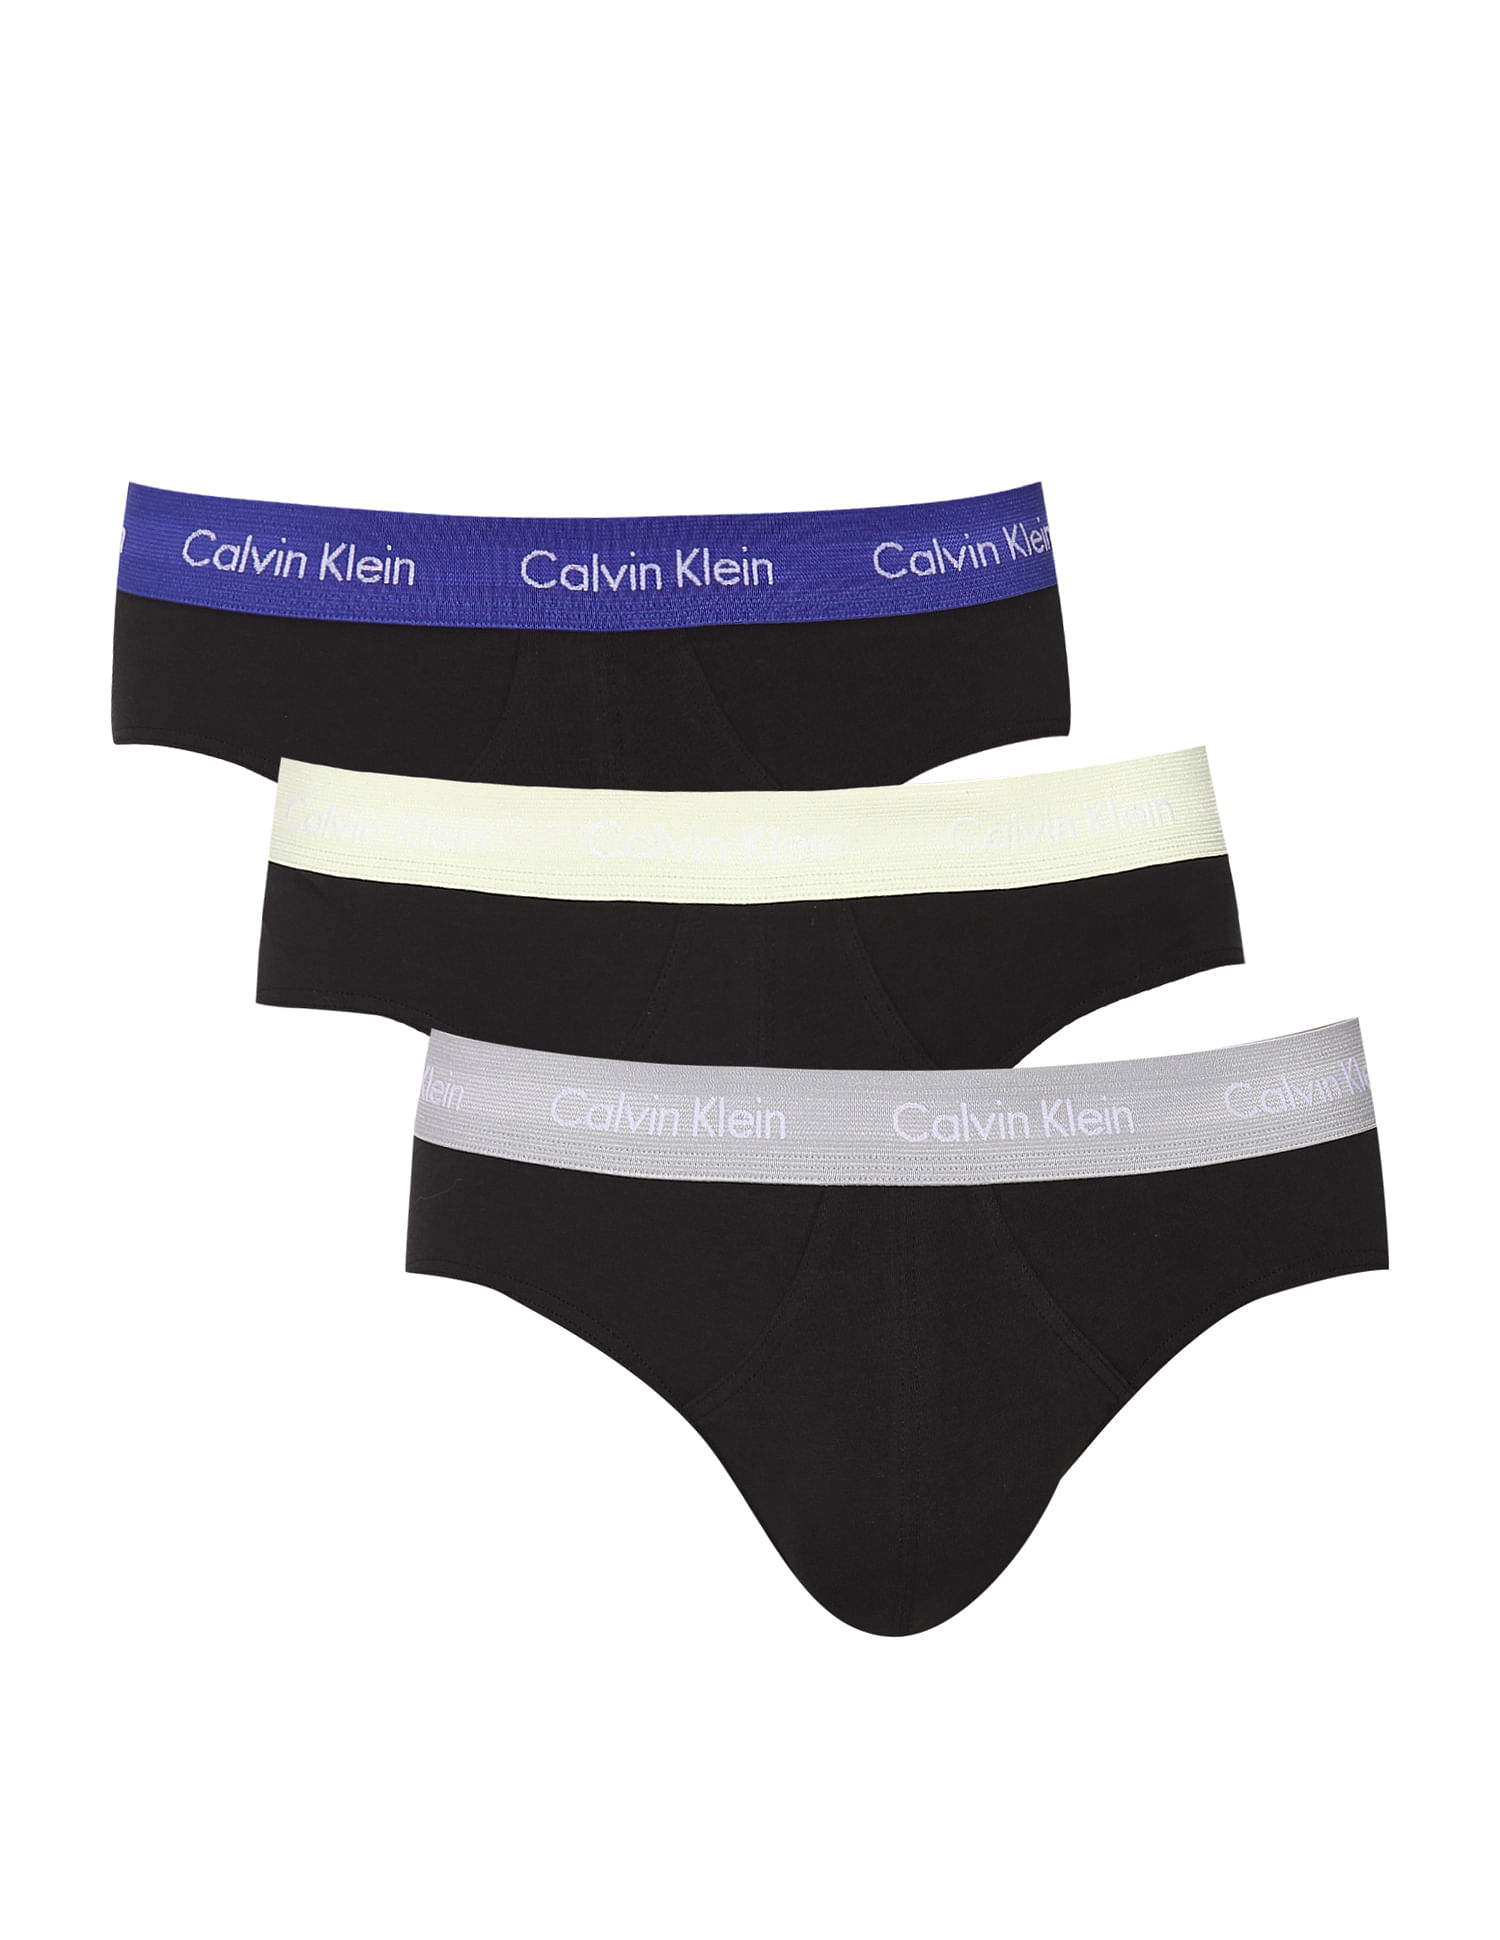 Buy Calvin Klein Underwear Men Black Mid Rise Solid Hipster Briefs